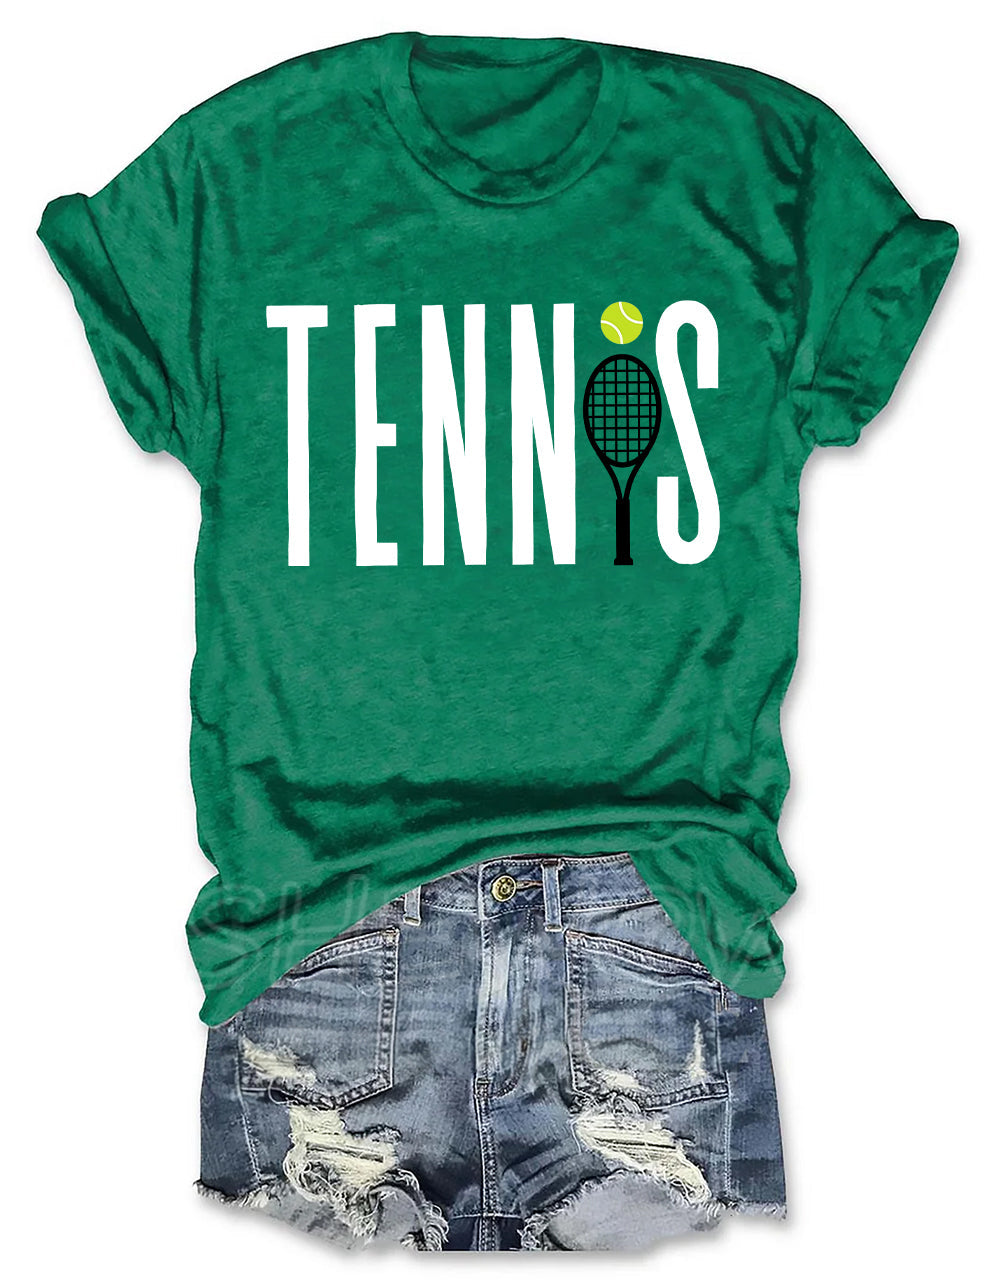 Tennis T-shirt